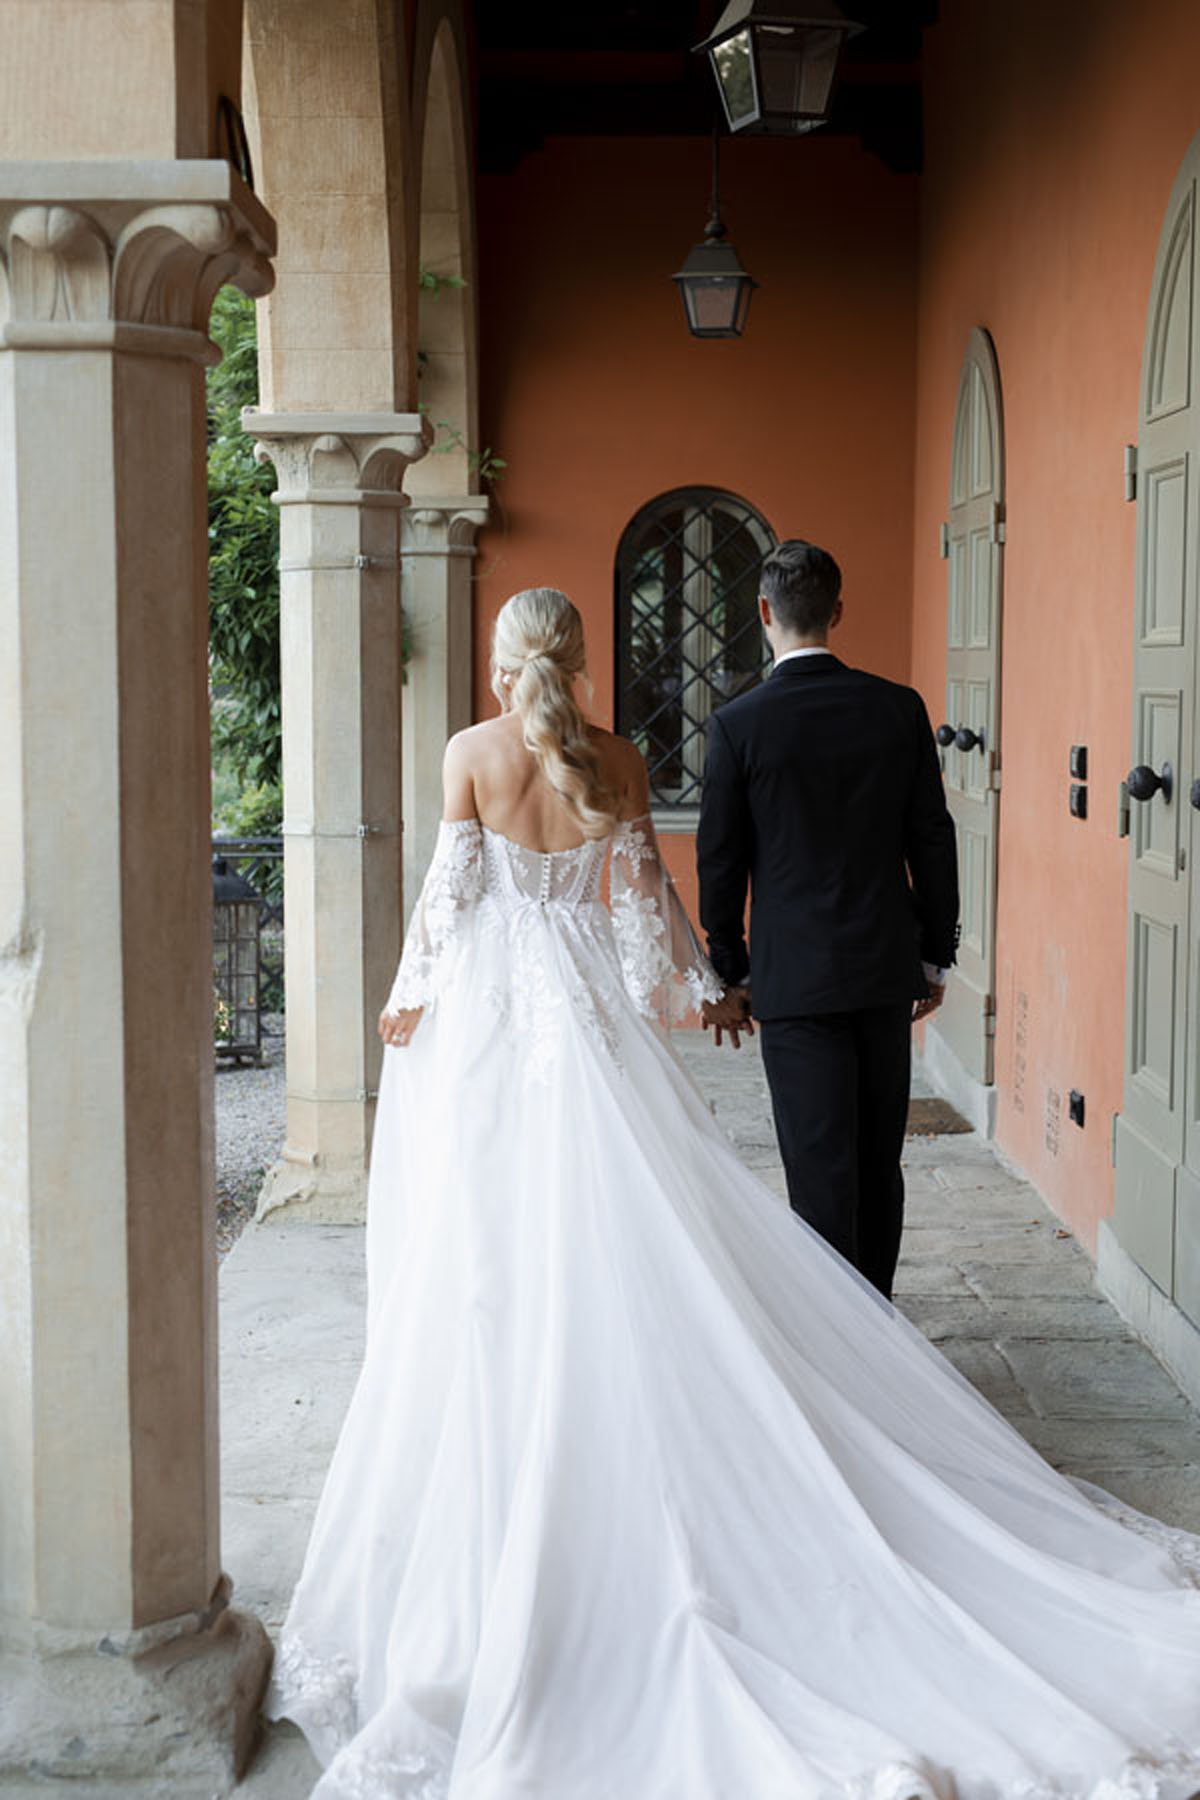 Fashion-Forward Boho Wedding In The Tuscan Hills